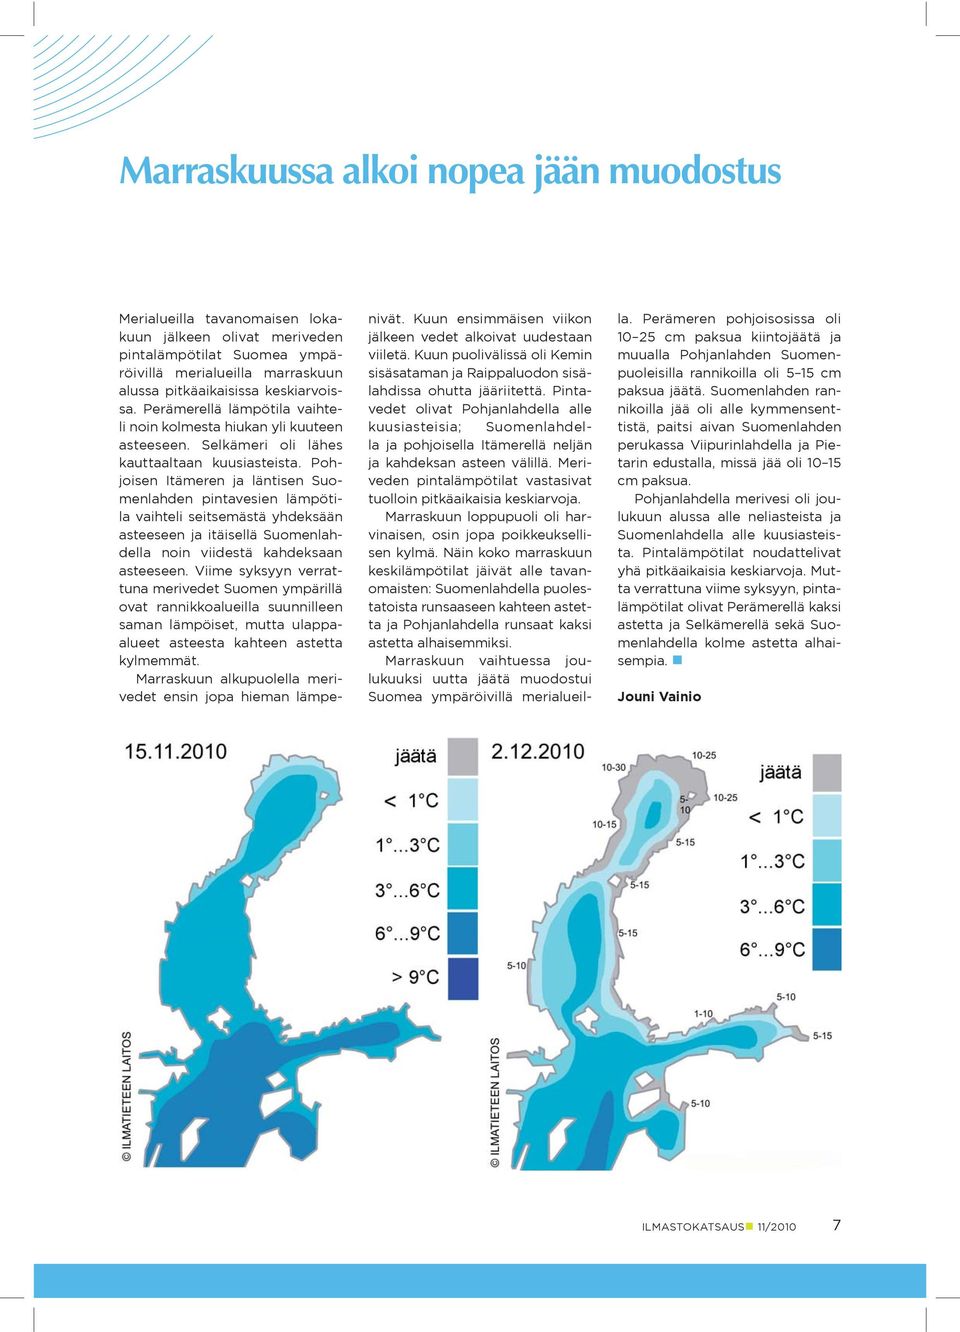 Pohjoisen Itämeren ja läntisen Suomenlahden pintavesien lämpötila vaihteli seitsemästä yhdeksään asteeseen ja itäisellä Suomenlahdella noin viidestä kahdeksaan asteeseen.